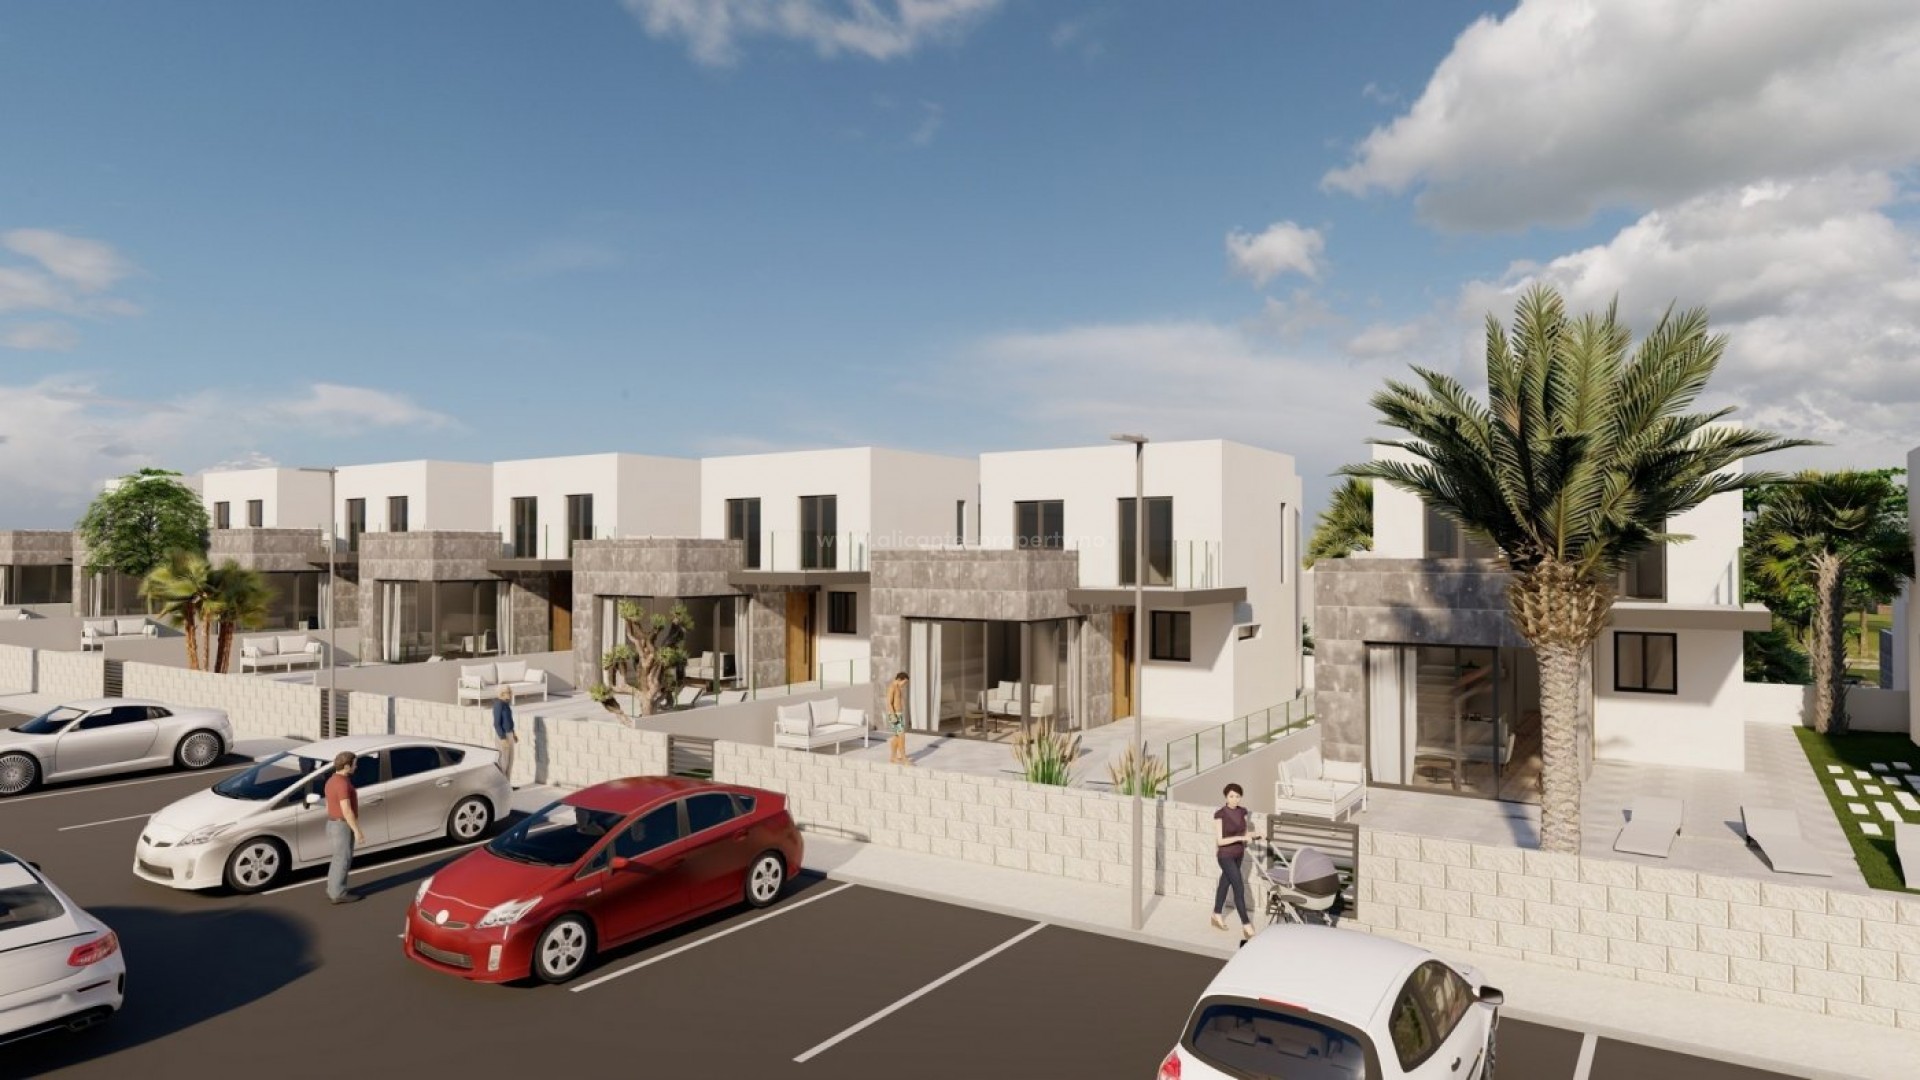 Helt nye hus/villaer i Los Altos de Torrevieja, 3 soverom (et med walk-in-garderobe) , 2 bad, gjestetoalett, basseng, stor terrasse og solarium